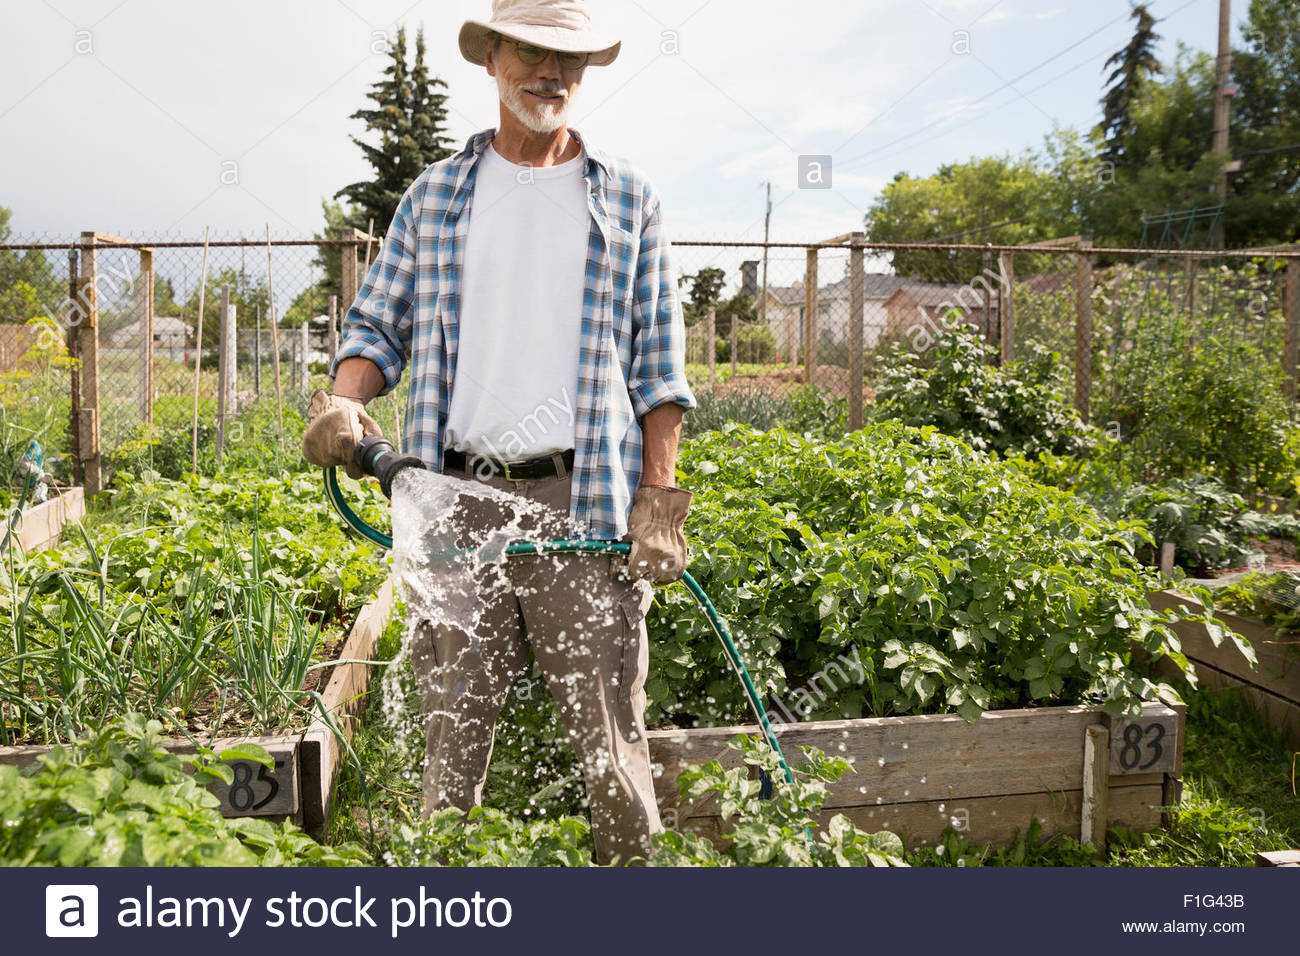 Hombre regando con una manguera de jardín vegetal Foto de stock